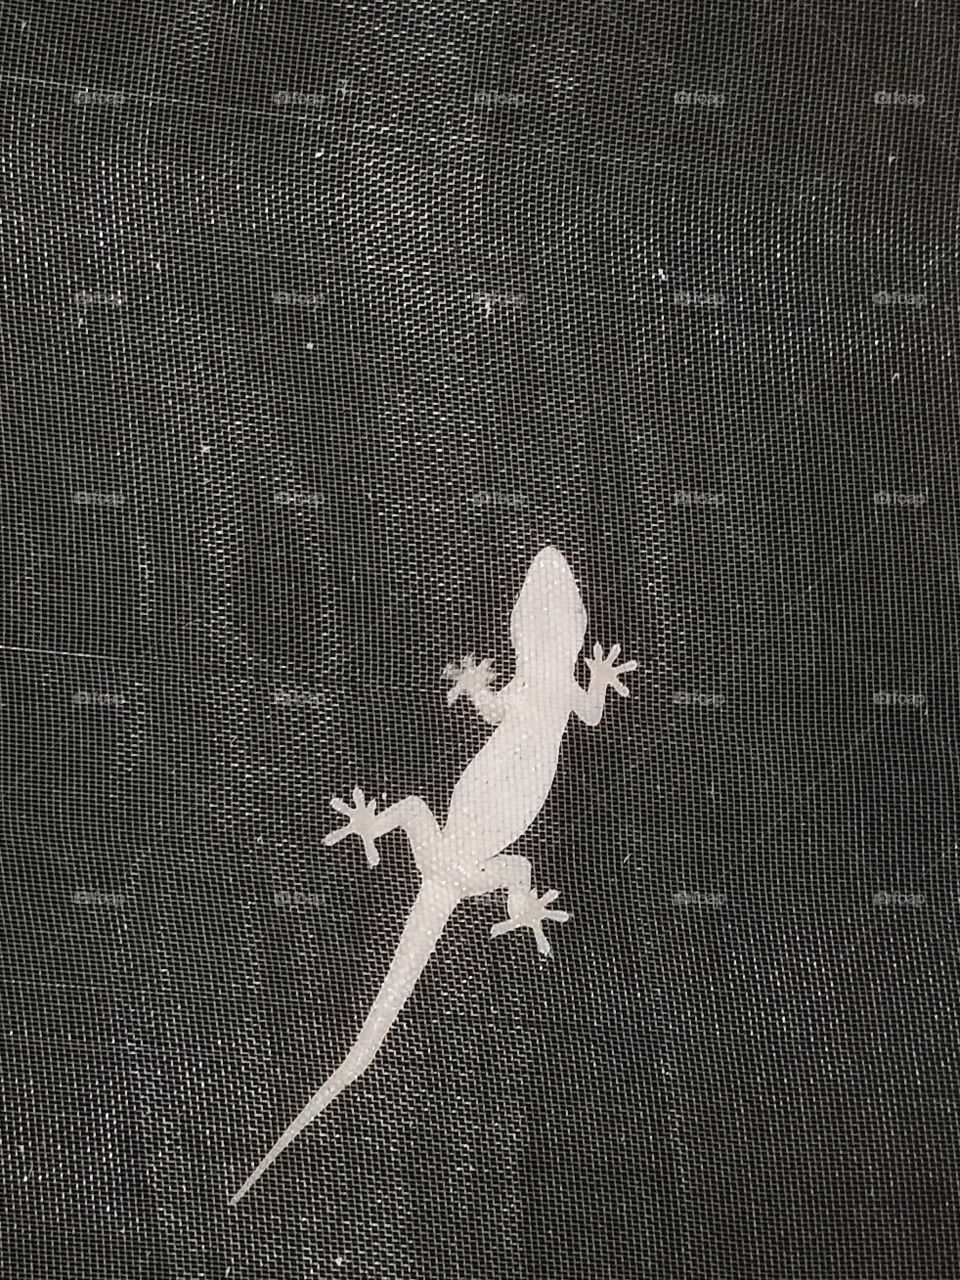 My Friendly little Salamander Just Hanging Around